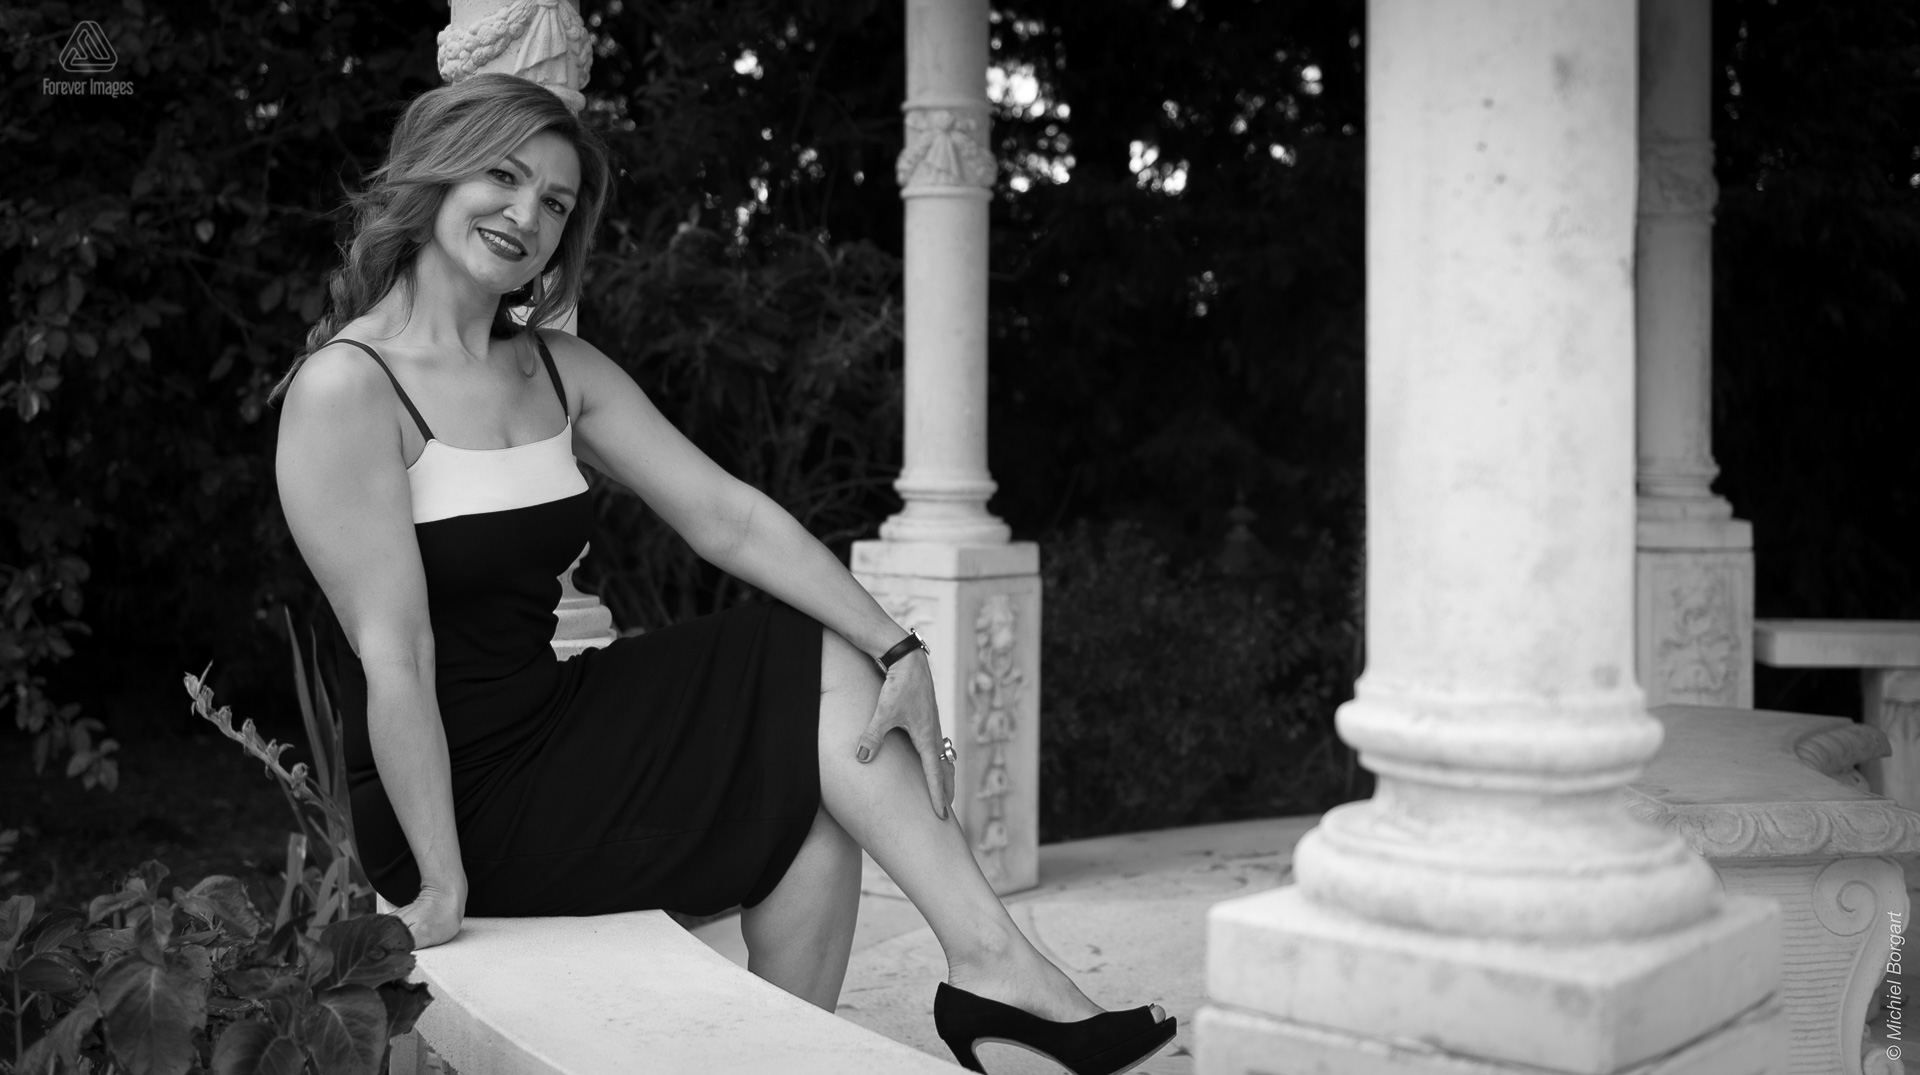 Portretfoto in zwart-wit mooie dame die zit in prieel met witte pilaren | Portretfotograaf Michiel Borgart - Forever Images.